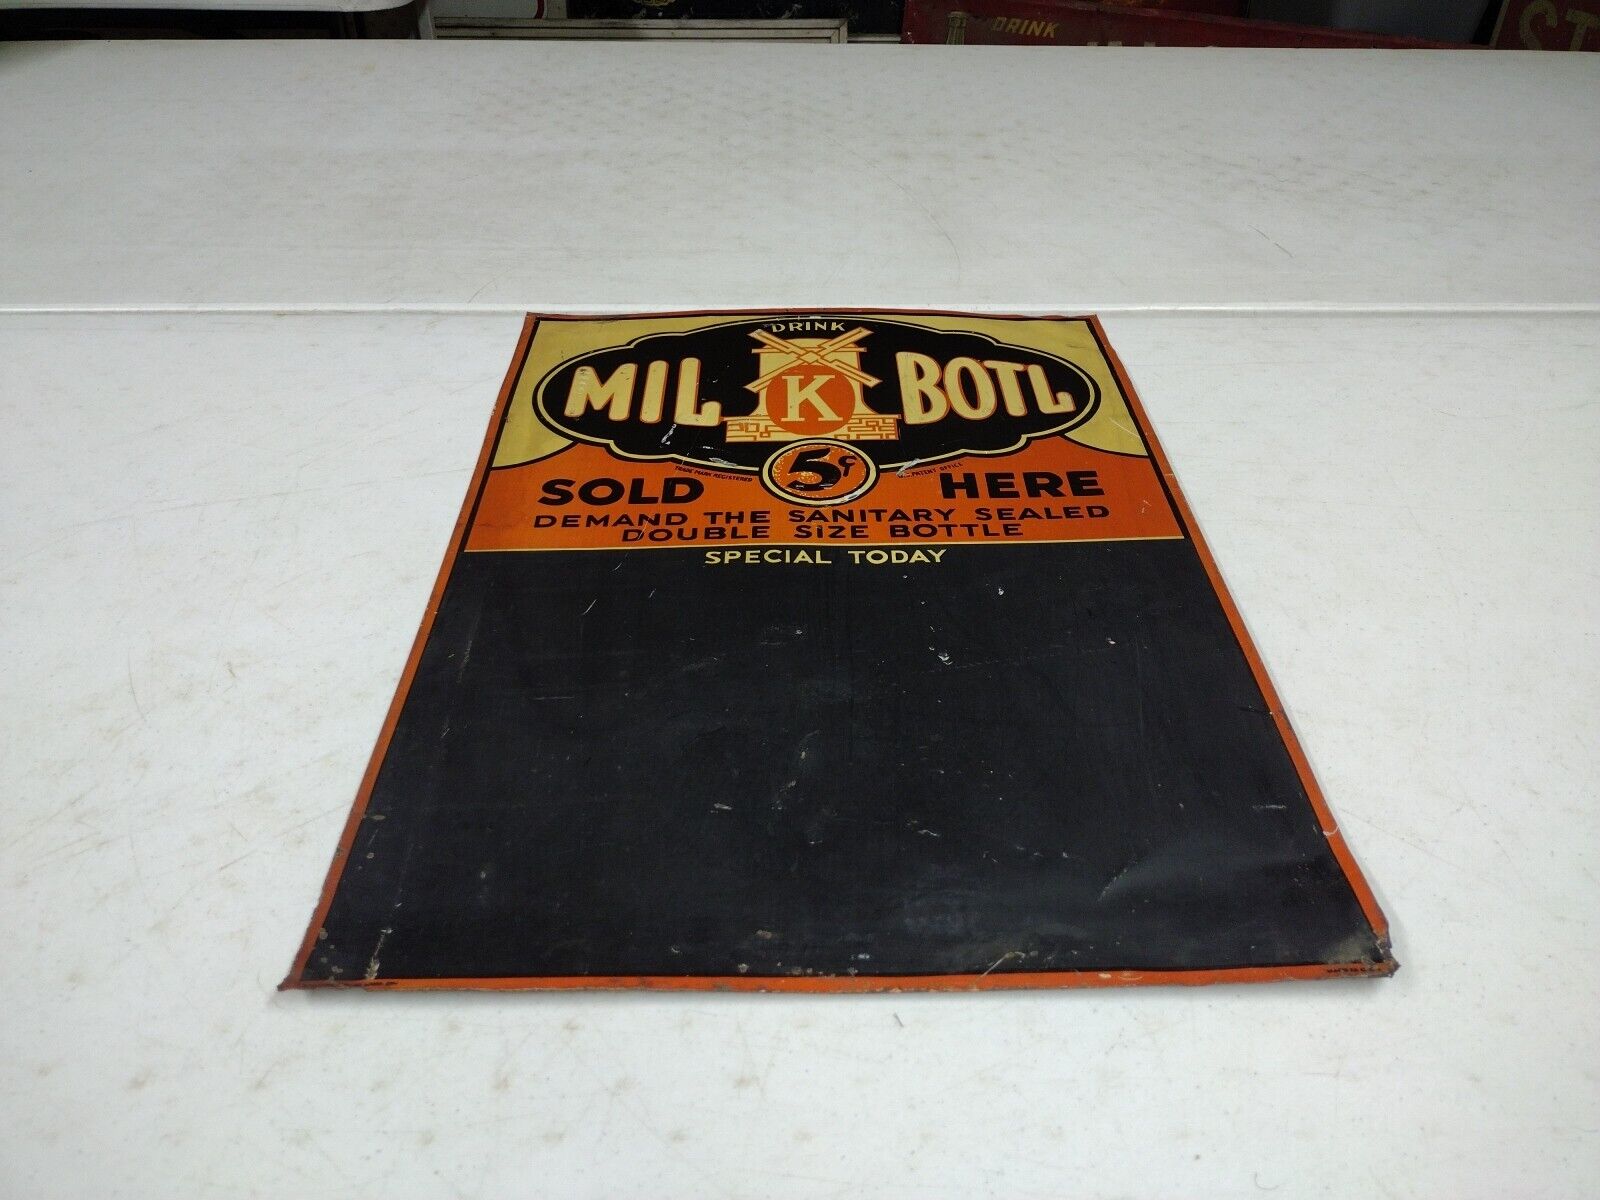 Vintage SST Drink Mil-k-botl Embossed Advertising Windmill Soda Menu Board Sign